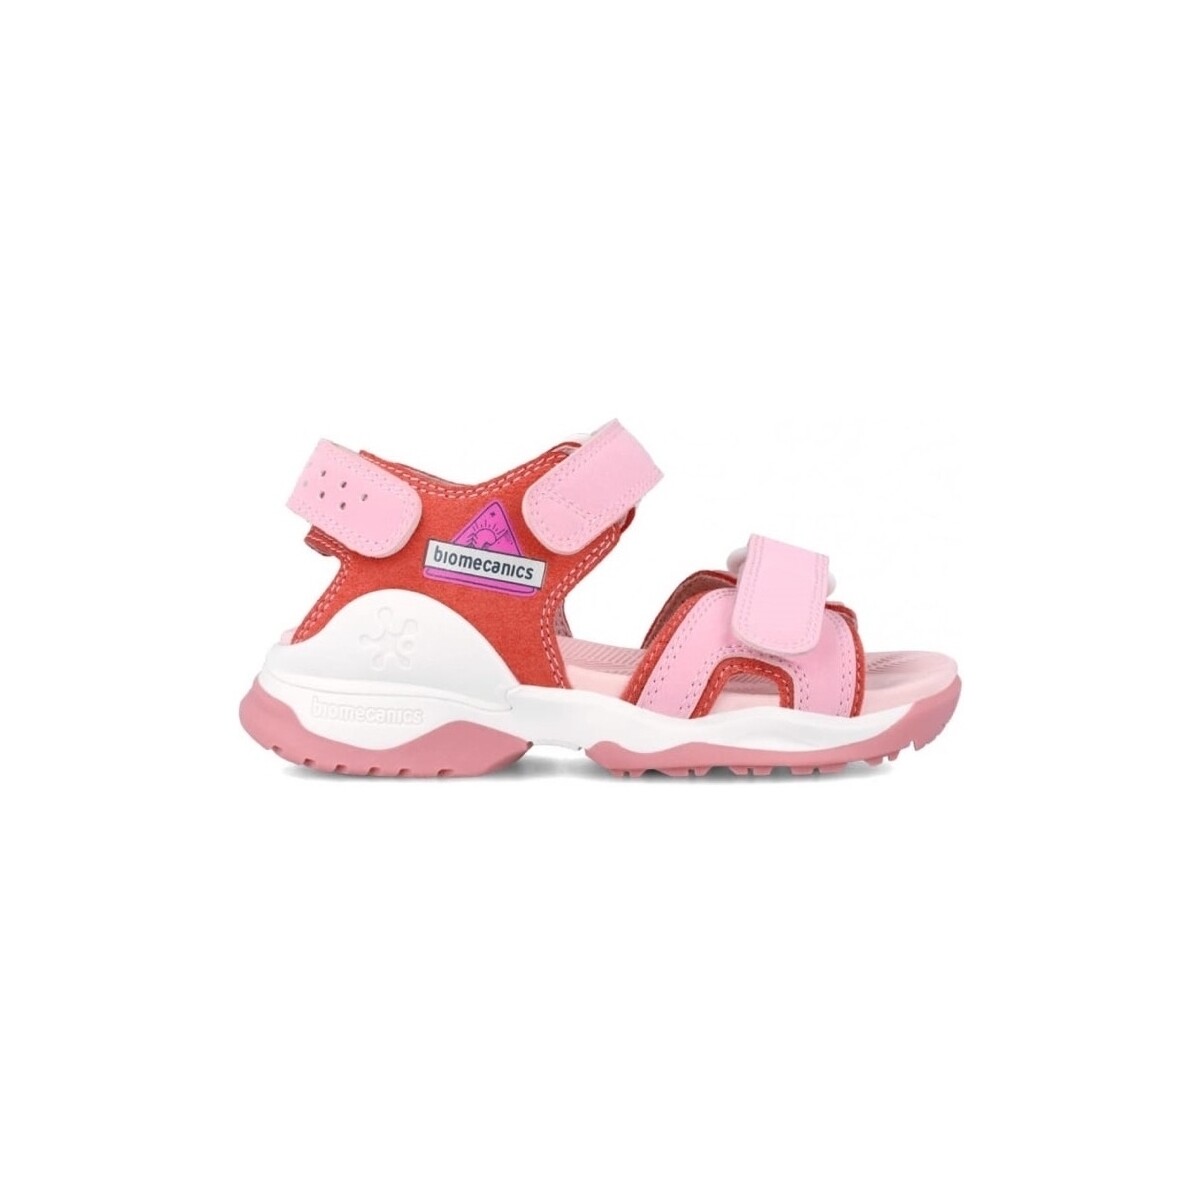 Παπούτσια Παιδί Σανδάλια / Πέδιλα Biomecanics Kids Sandals 242281-D - Rosa Ροζ